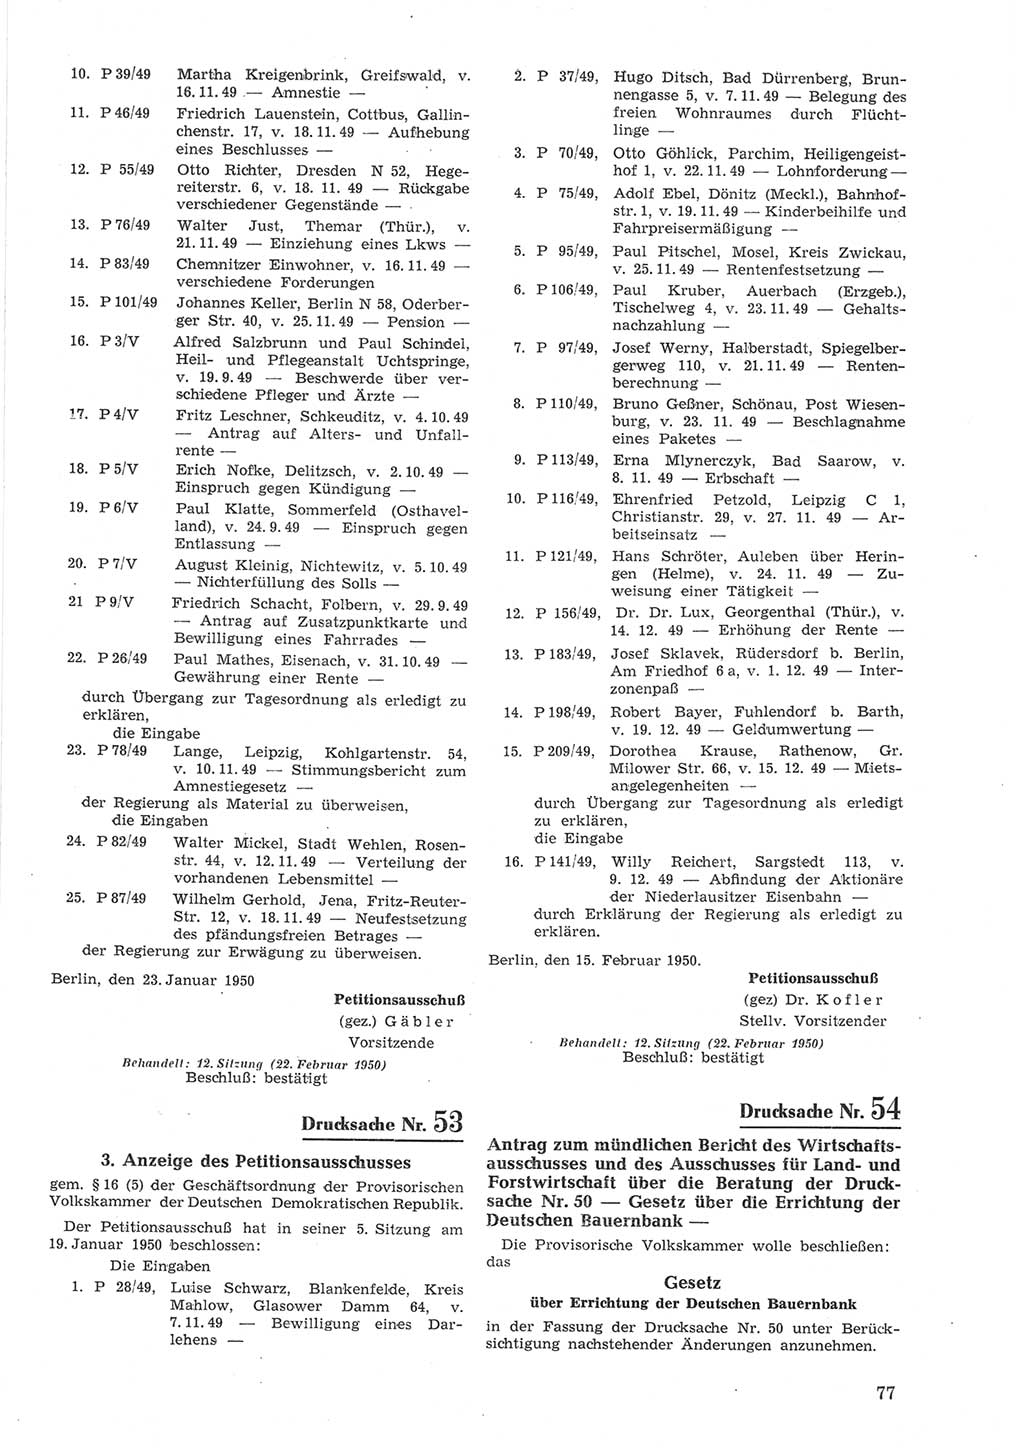 Provisorische Volkskammer (VK) der Deutschen Demokratischen Republik (DDR) 1949-1950, Dokument 677 (Prov. VK DDR 1949-1950, Dok. 677)